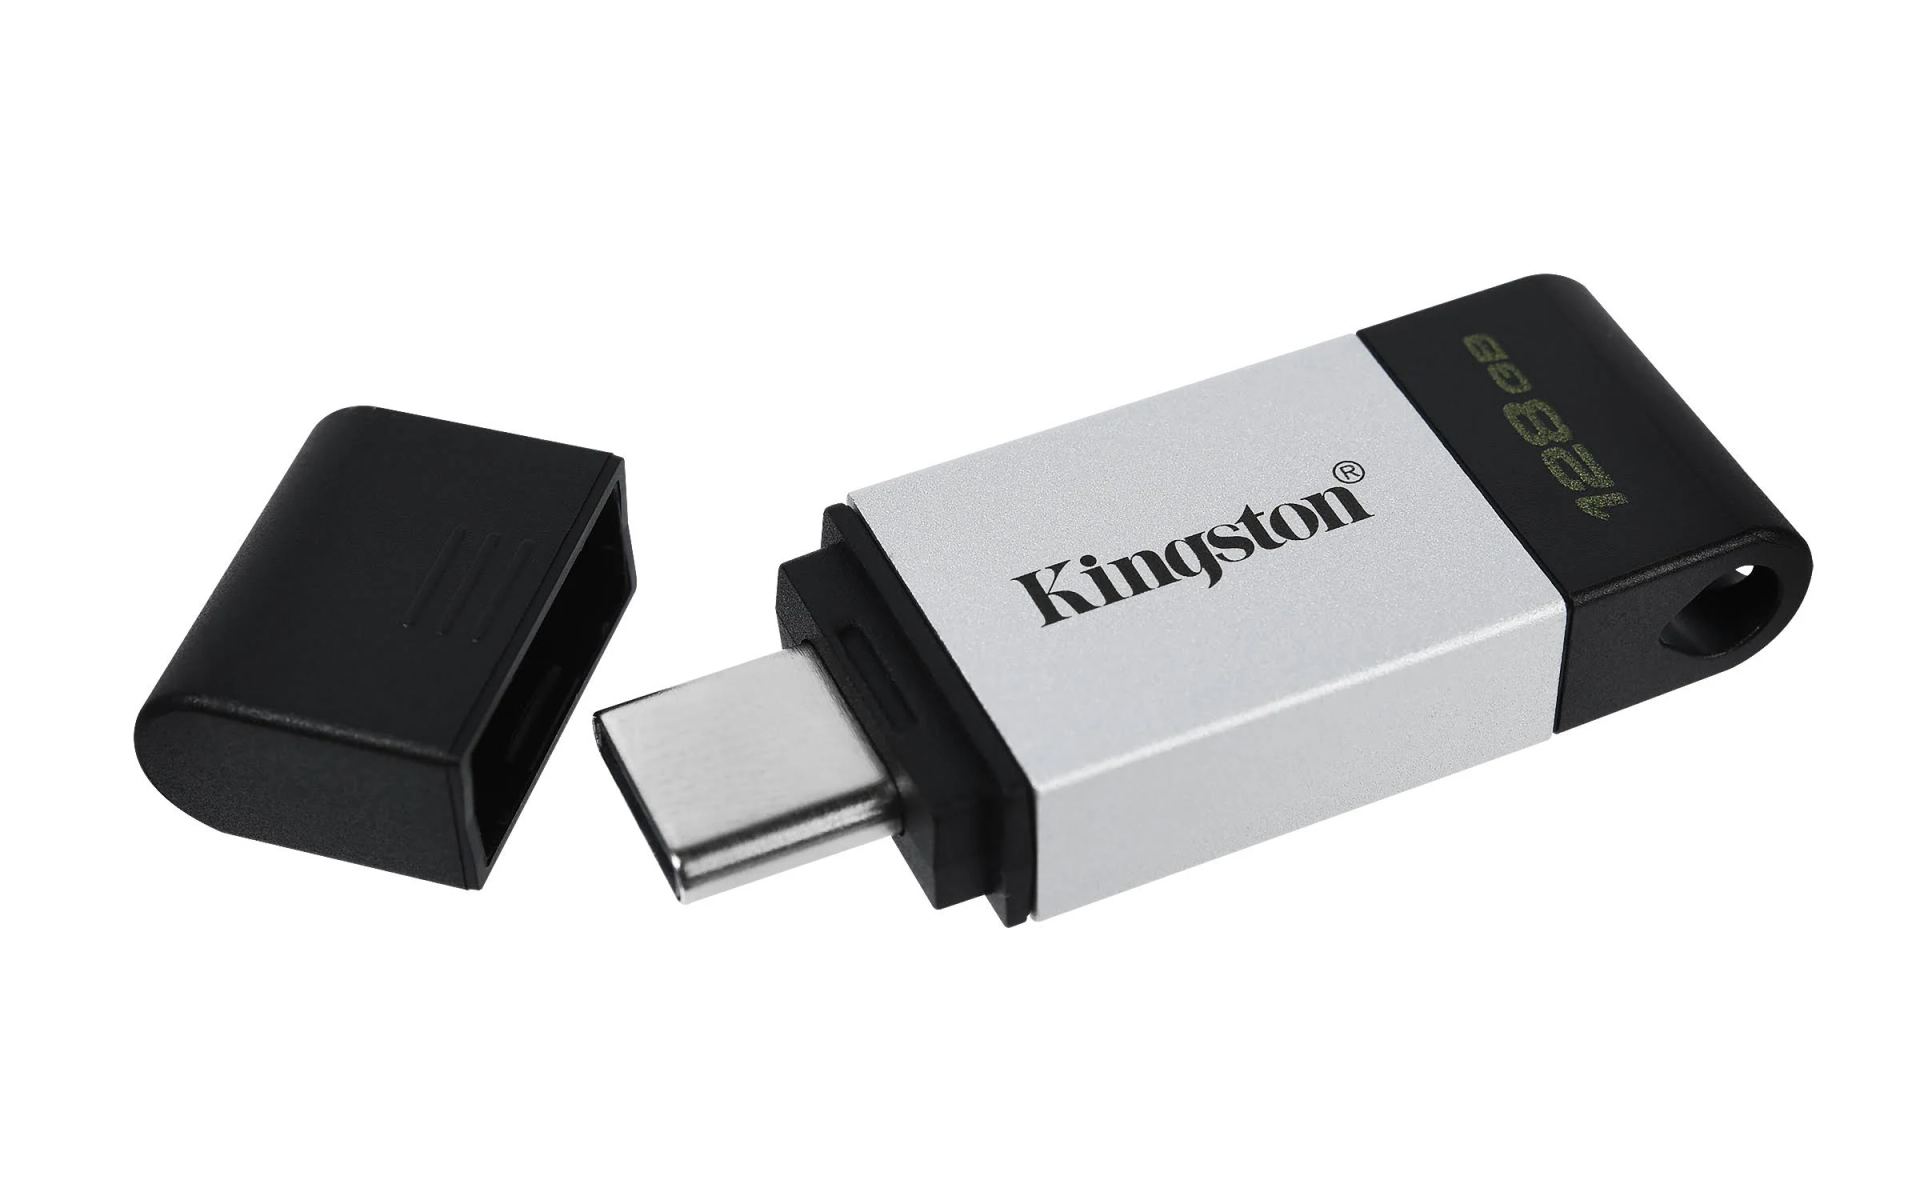 KINGSTON 128 GB) (Schwarz, DT80/128GB Stick USB